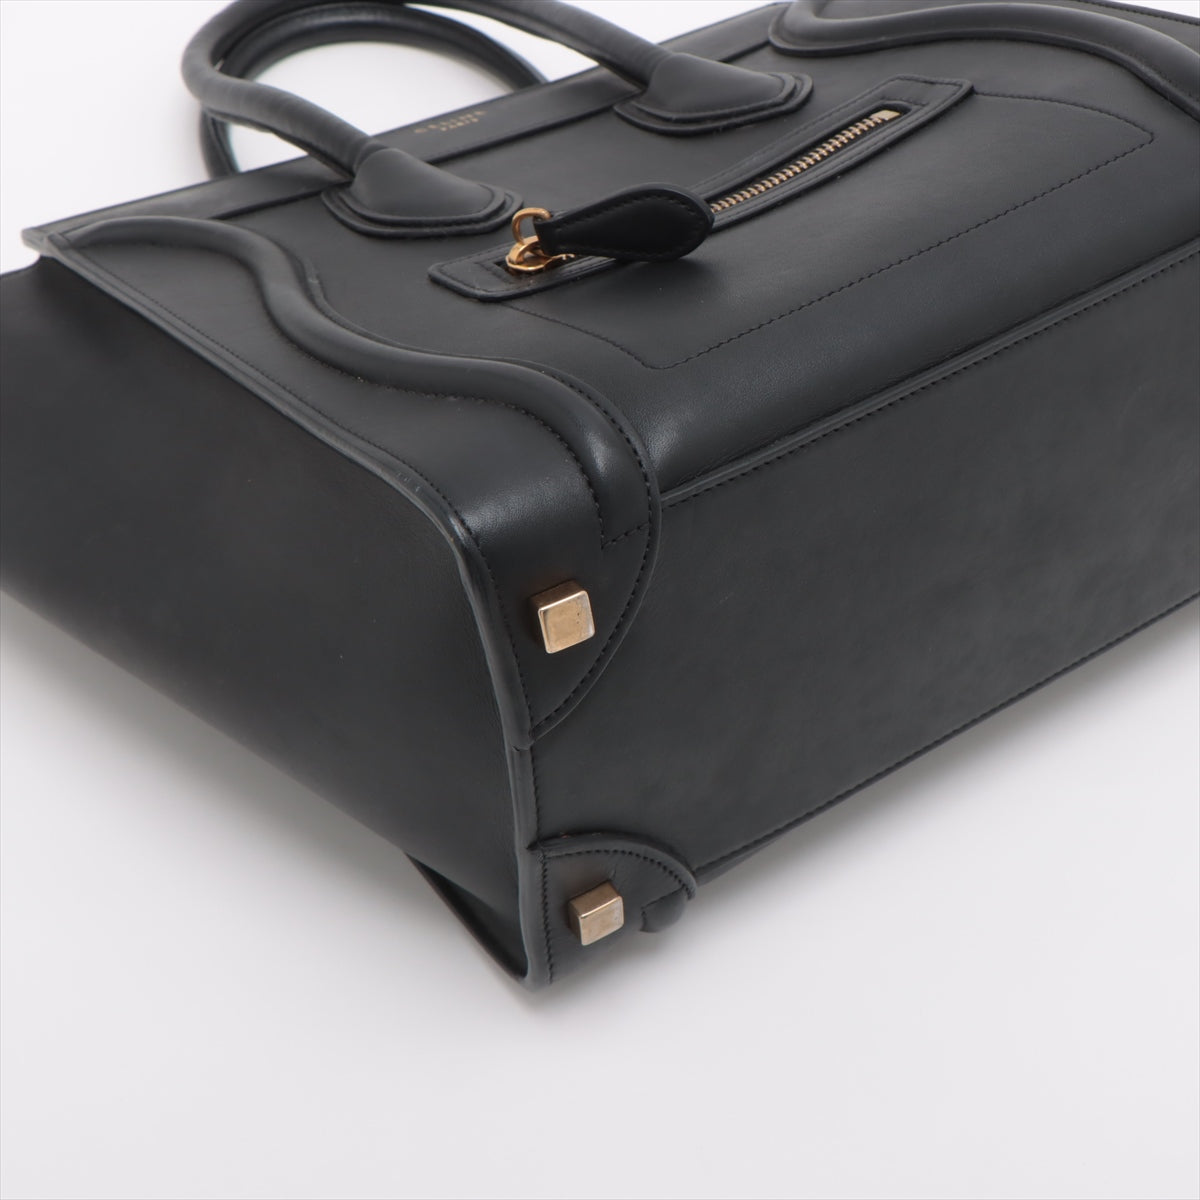 Celine Luggage Micro  Leather Handbag Black Lagoon